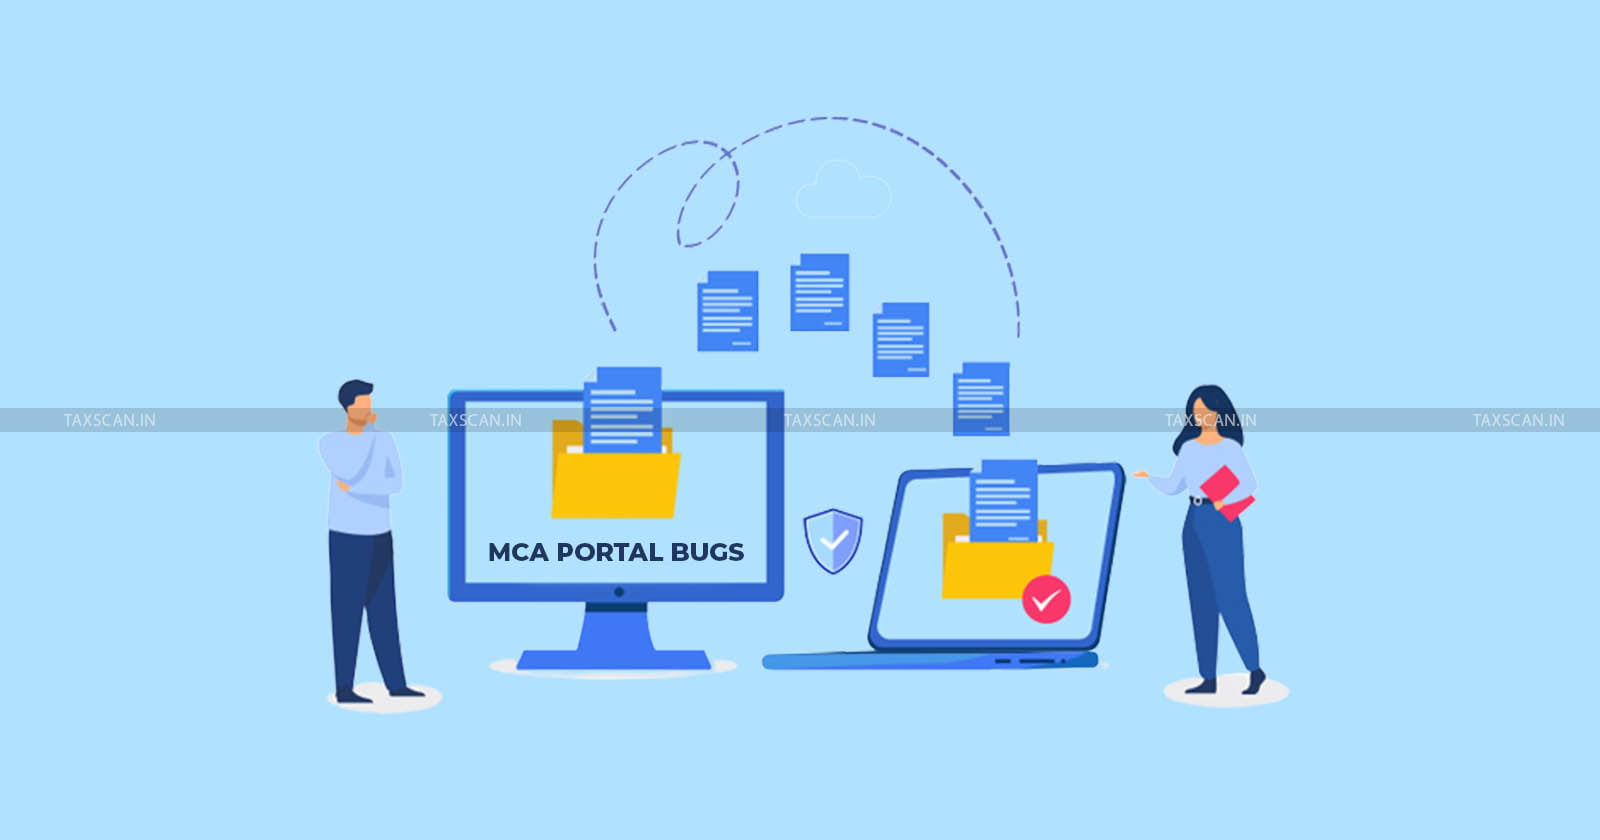 MCA Portal - V3 Portal - MCA - MCA 21 - MCA V3 - taxscan